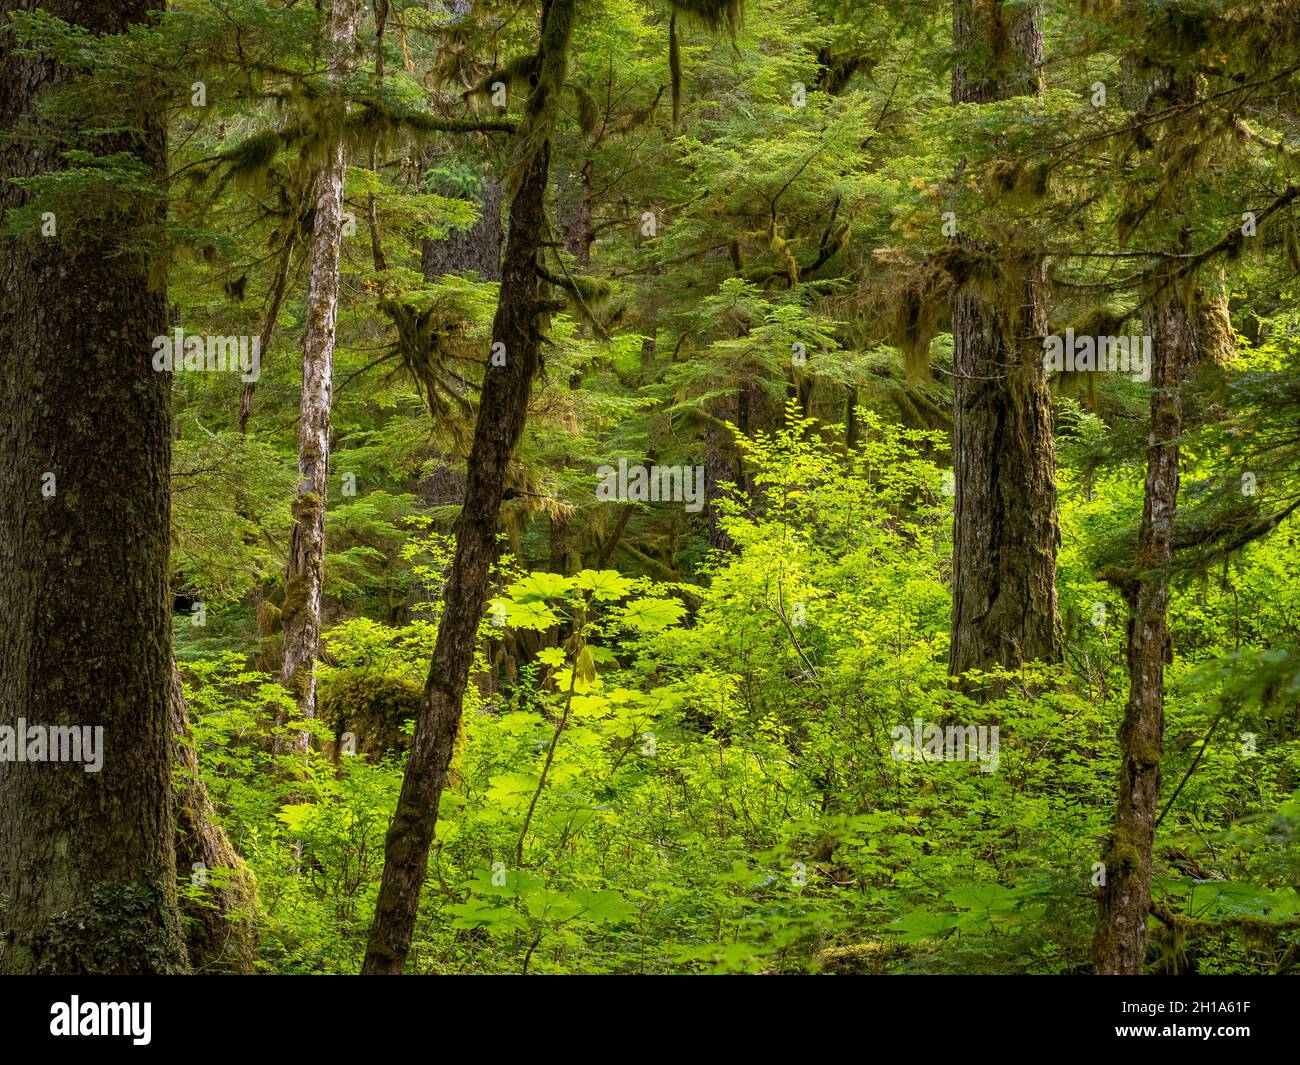 La zona de observación de los osos de Pack Creek, Tongass National Forest, Alaska. Foto de stock